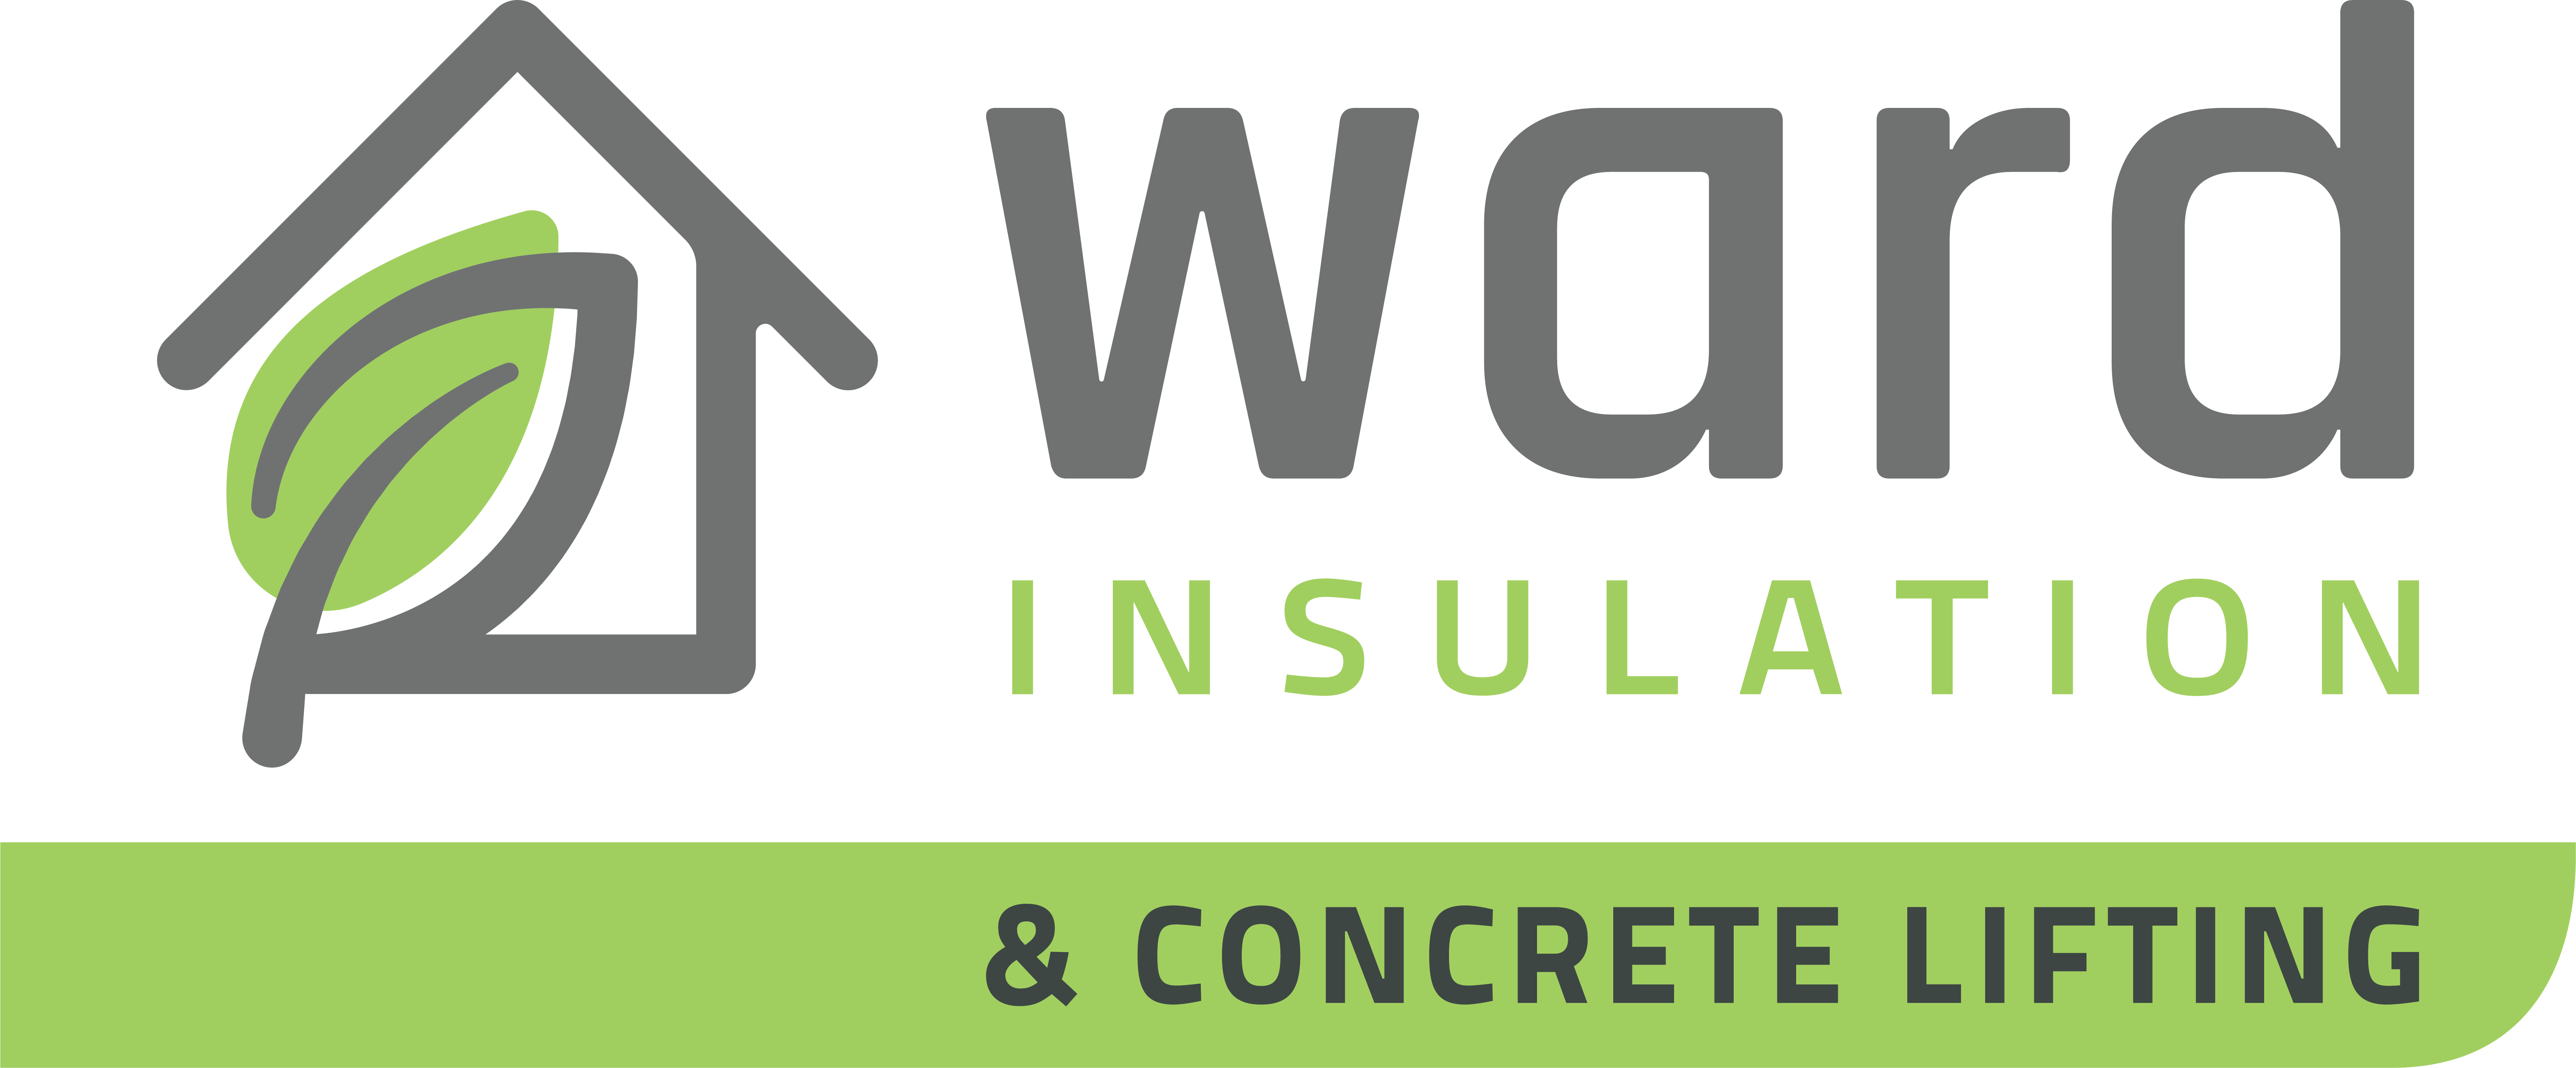 Ward Insulation, Inc. Logo